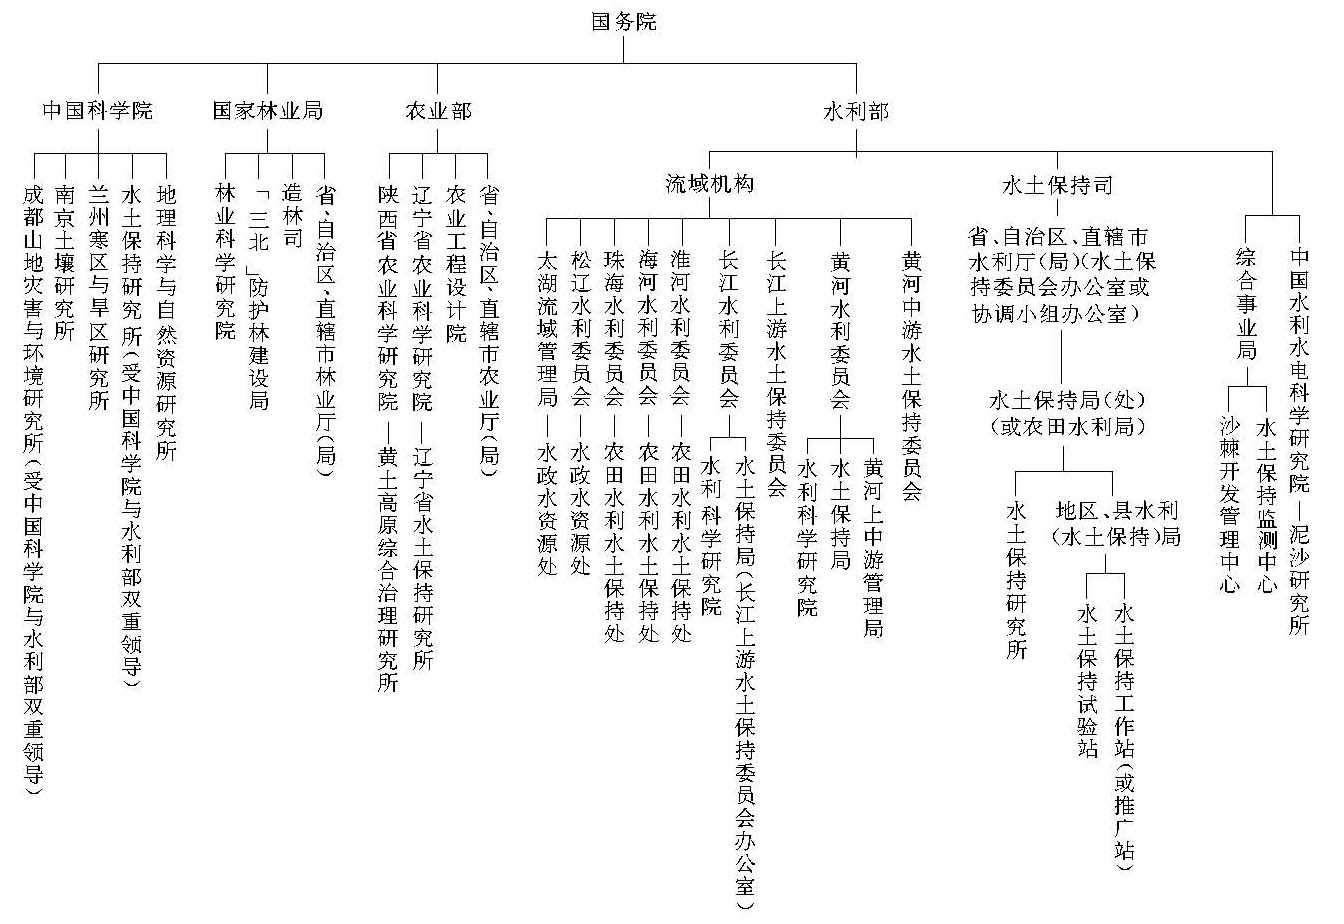 中国水土保持管理aoa体育官网app机构和科学研究机构系统图（一）(组图)